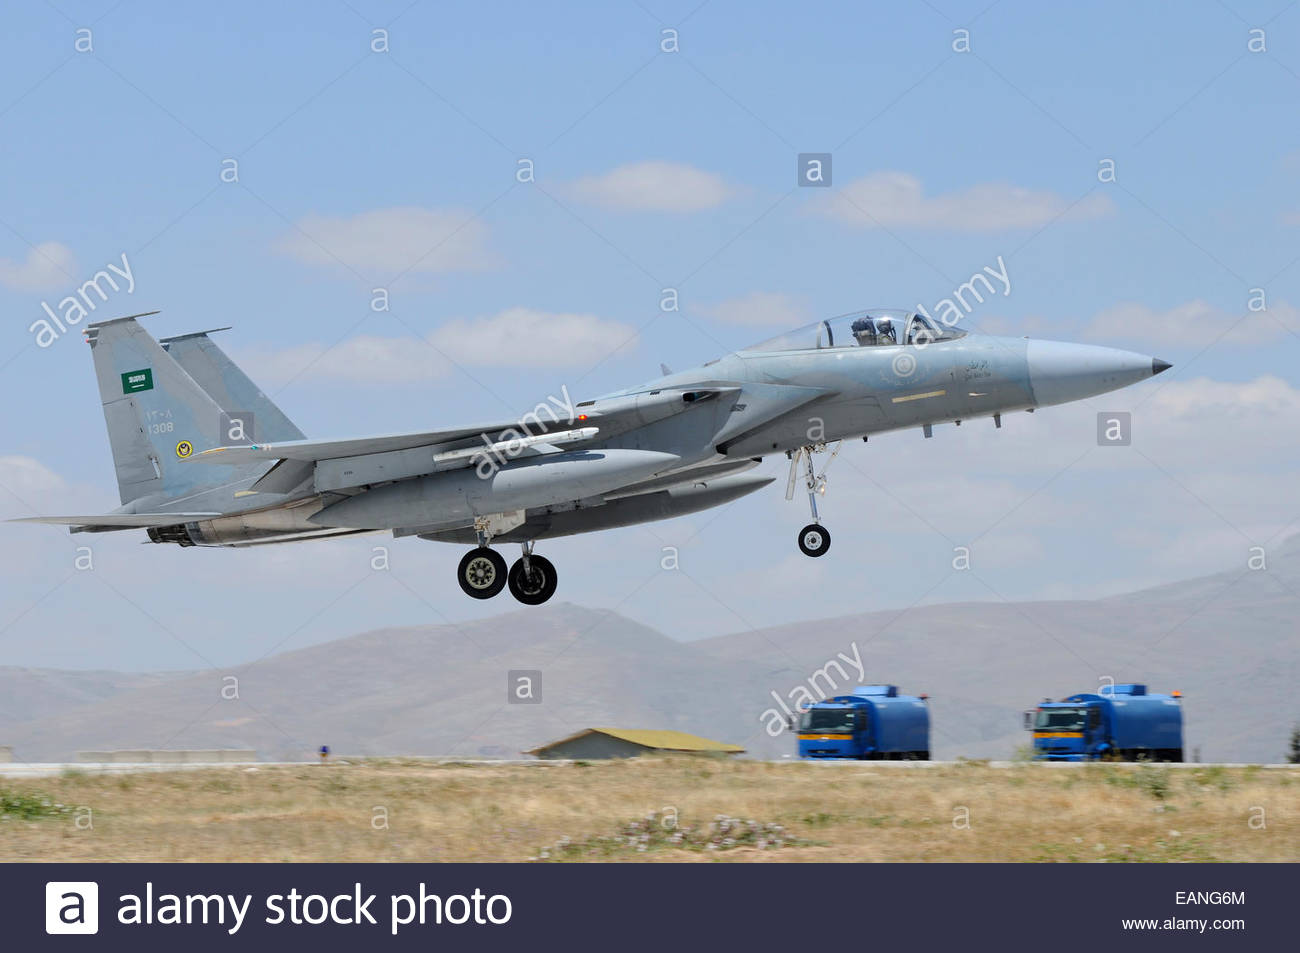 f-15-eagle-of-the-royal-saudi-air-force-landing-at-konya-air-base-EANG6M.jpg